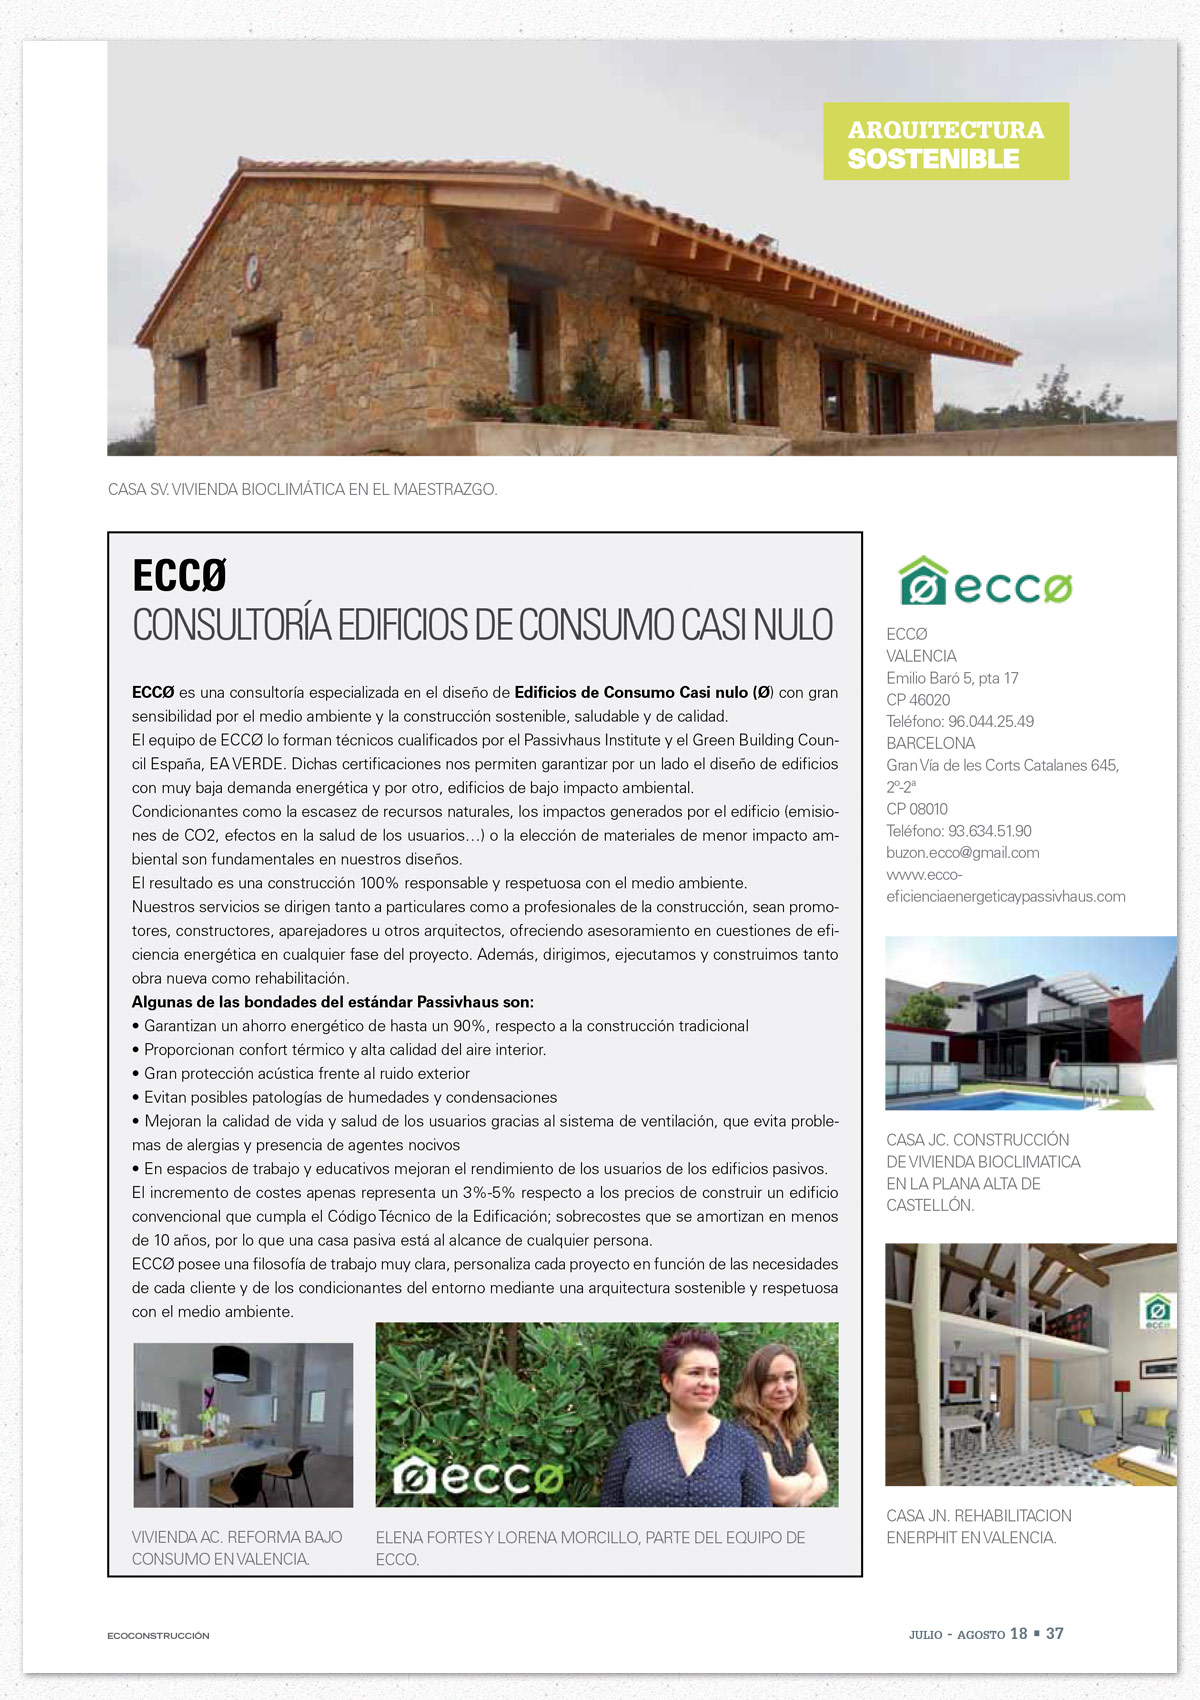 Ecoconstrucción: ECCØ en Anuario 2018